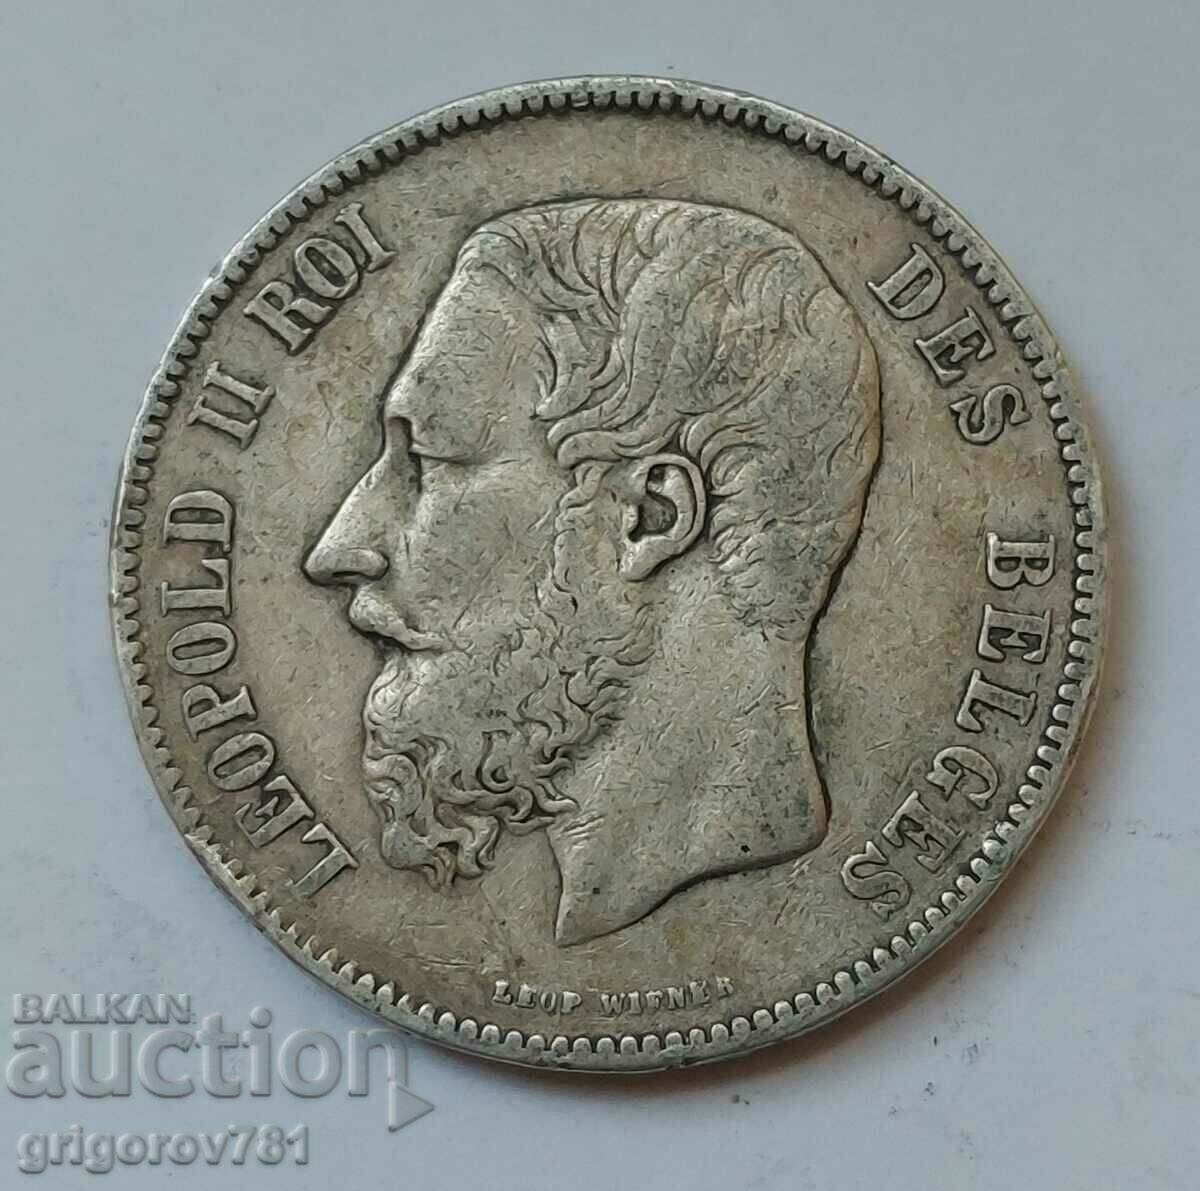 5 Francs Silver Belgium 1873 - Silver Coin #228